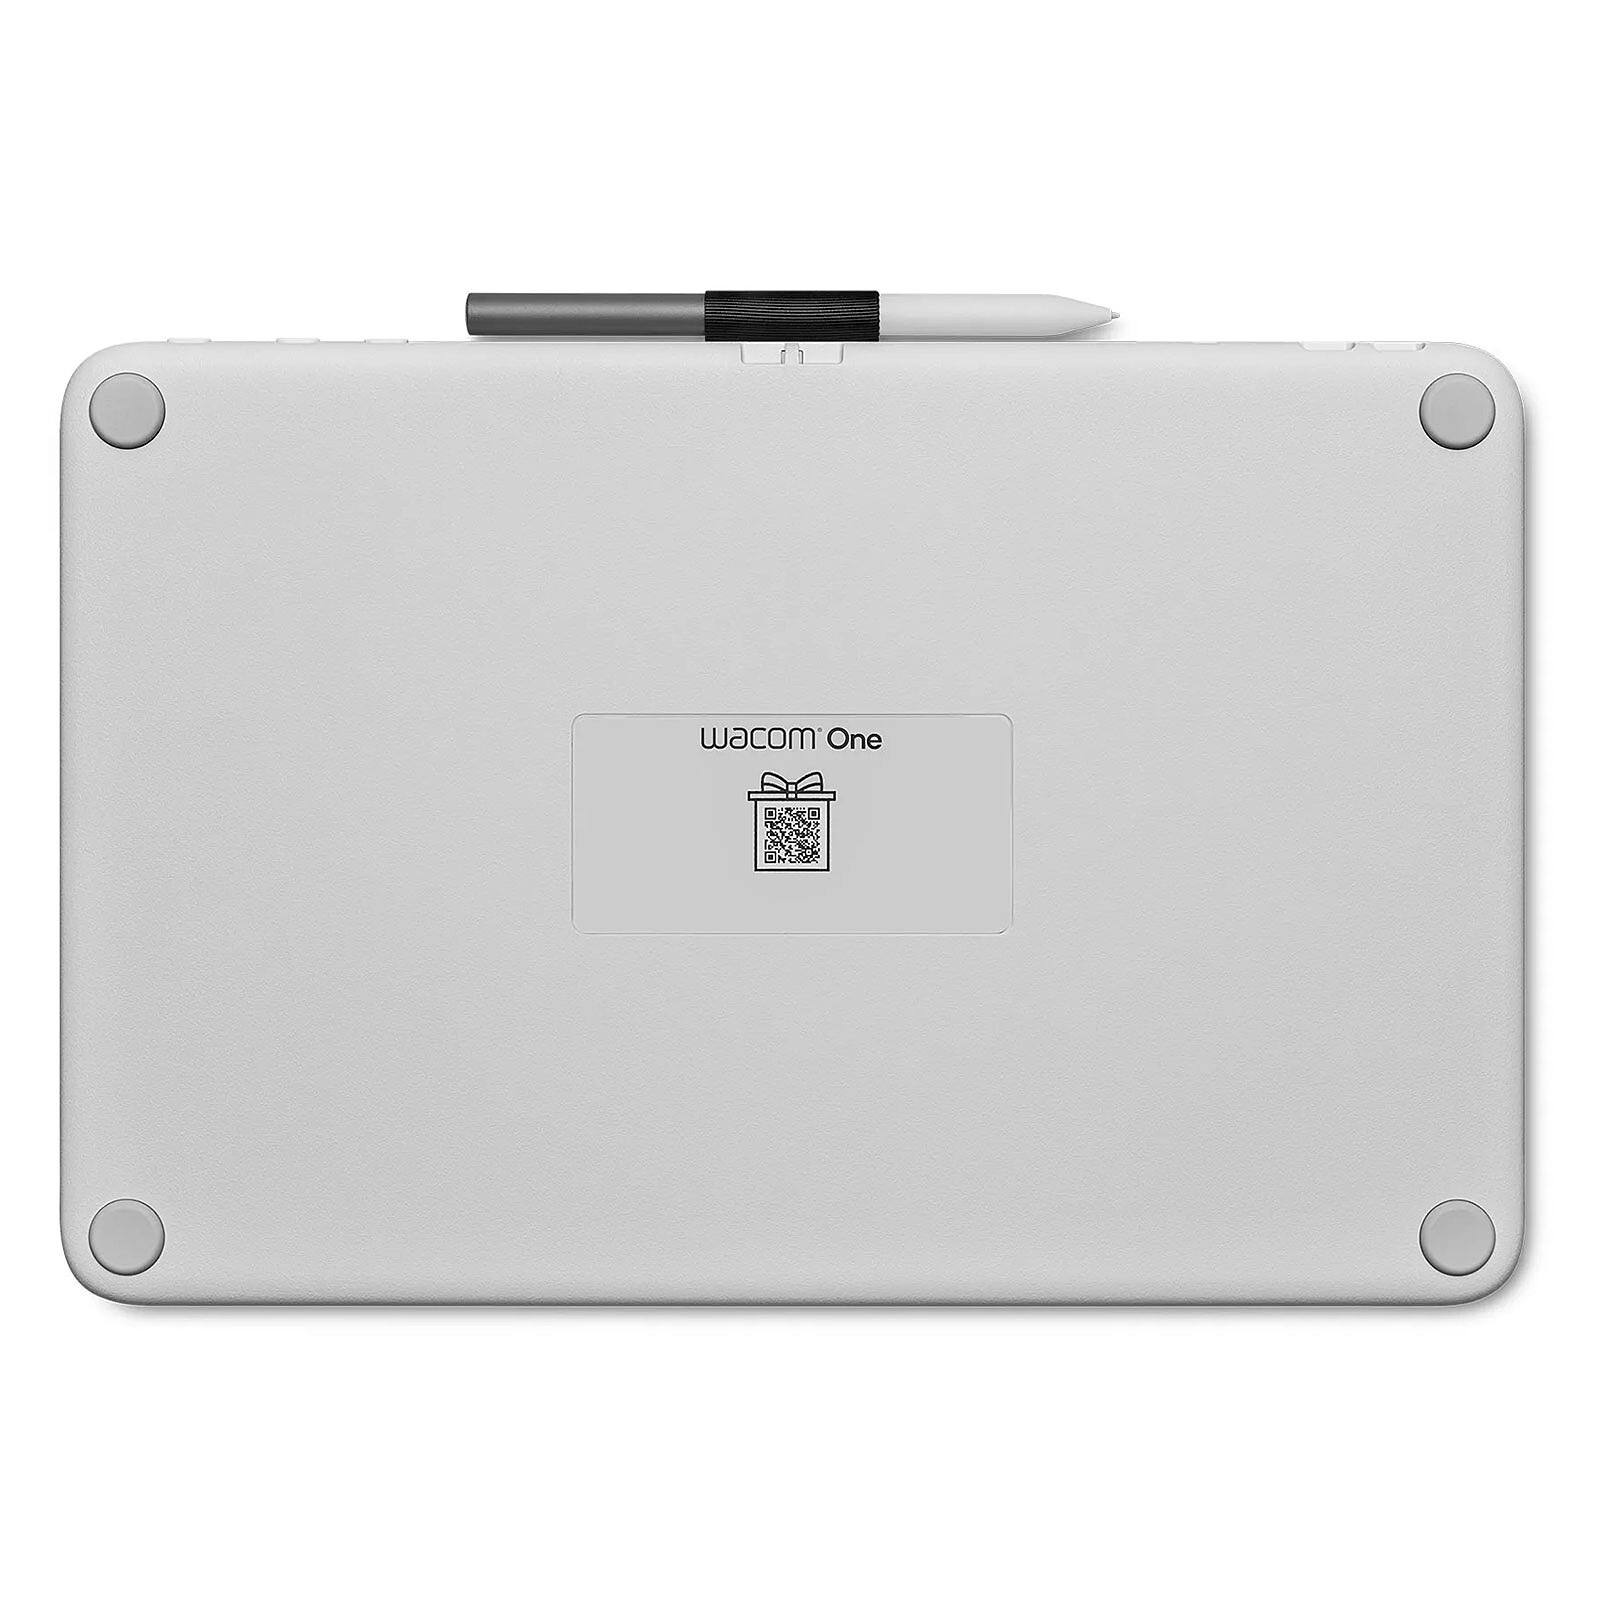 Wacom Cintiq 13HD : une tablette graphique à écran Full HD de 13